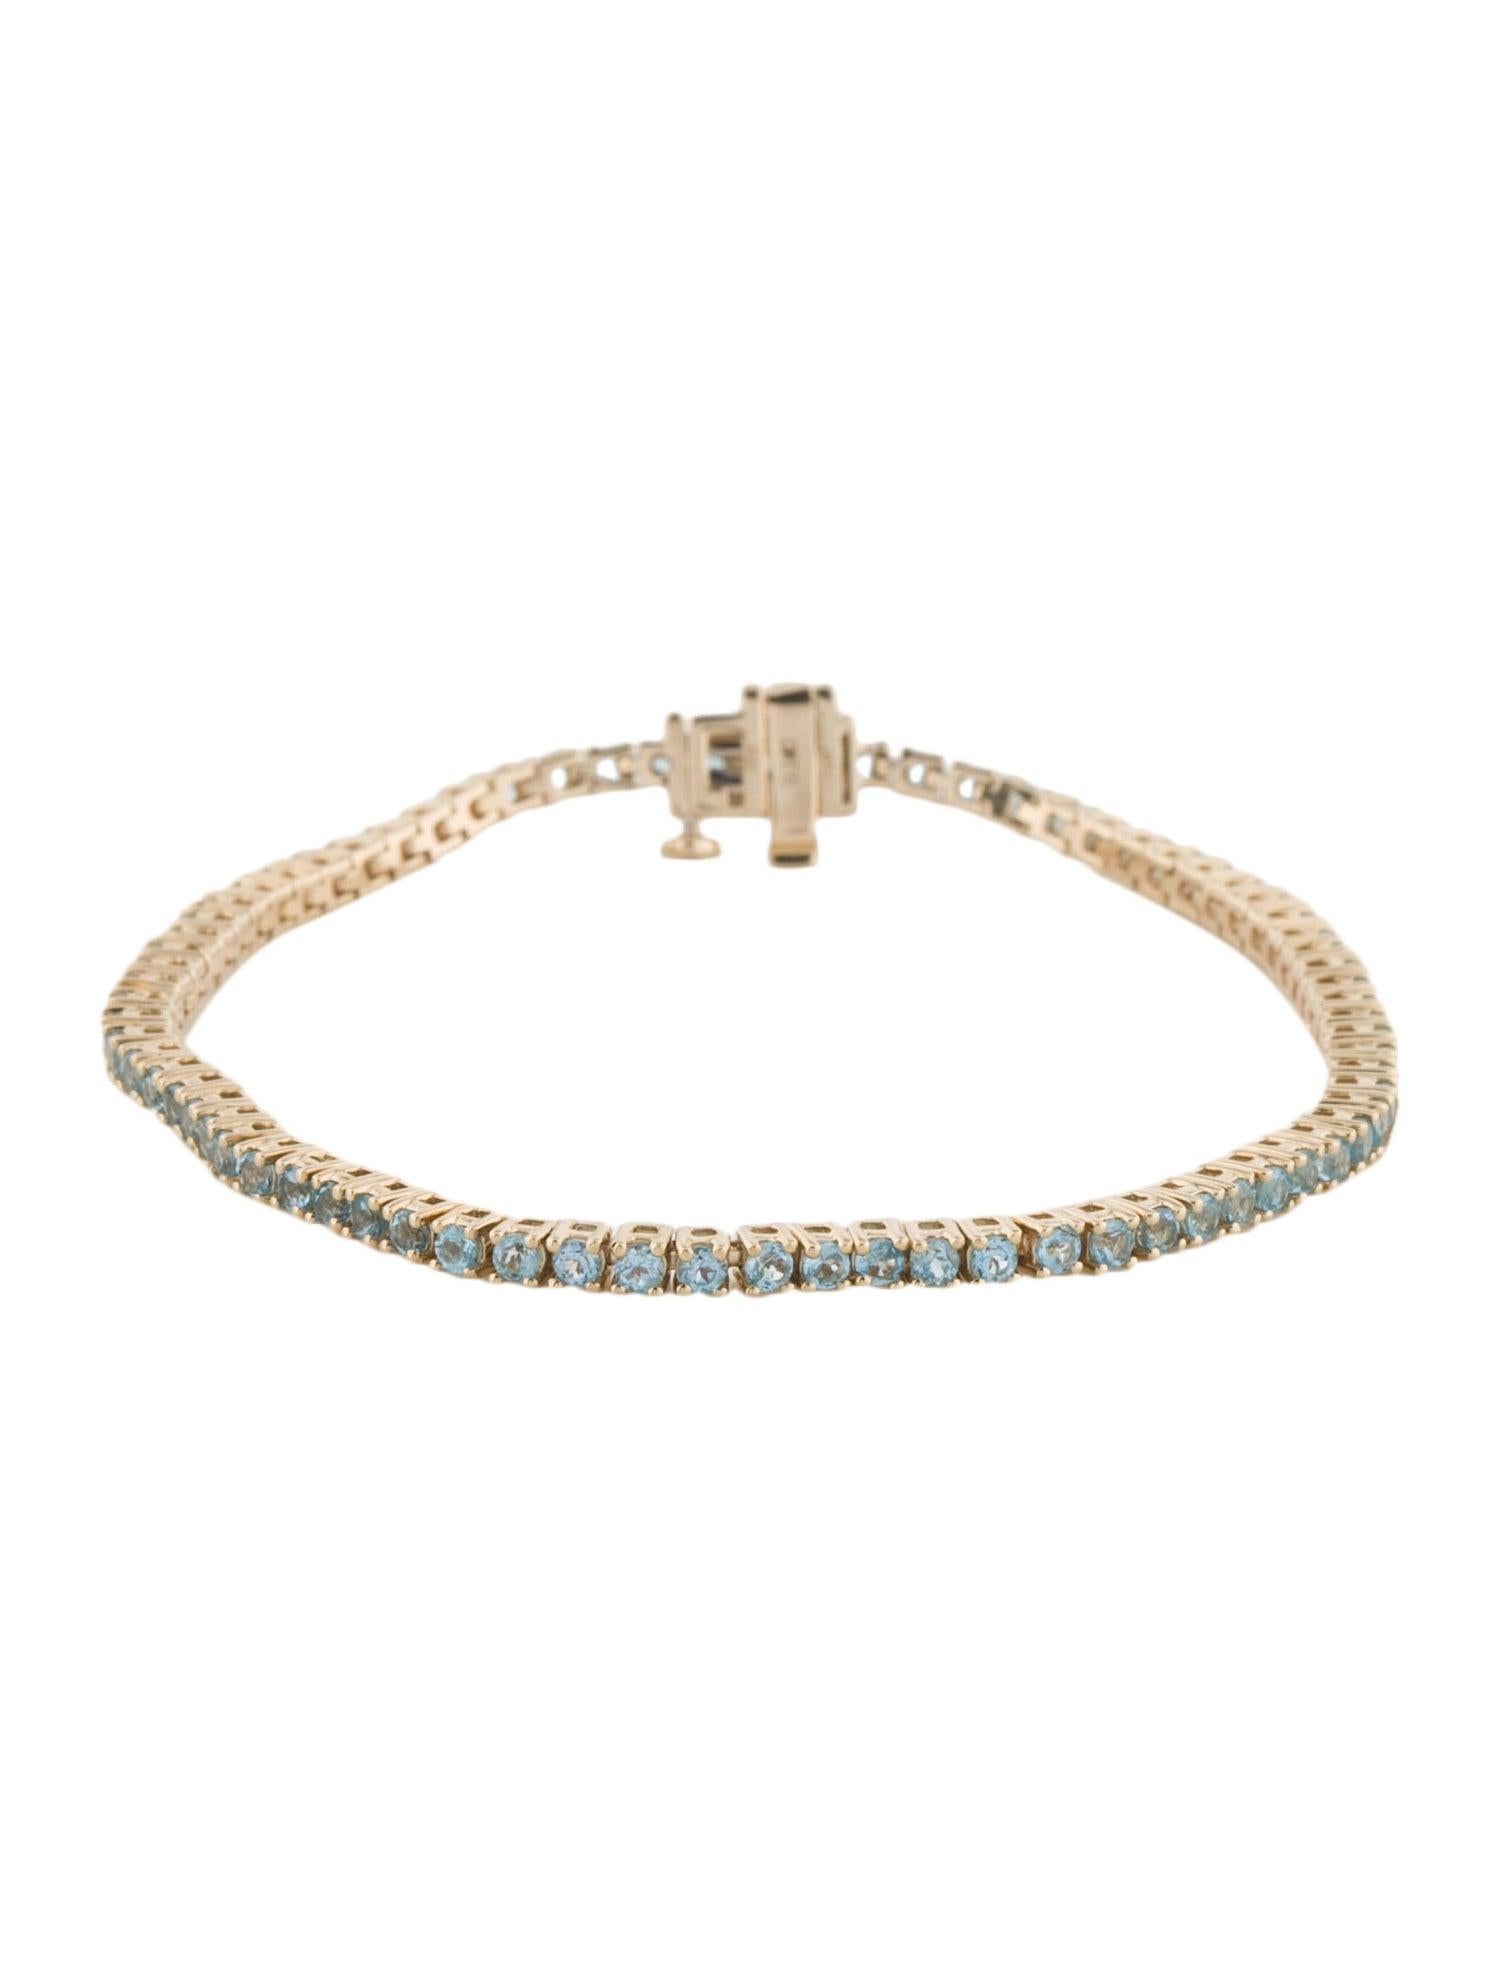 Brilliant Cut 14K Blue Topaz Link Bracelet - Captivating Gemstone Elegance, Timeless Design For Sale